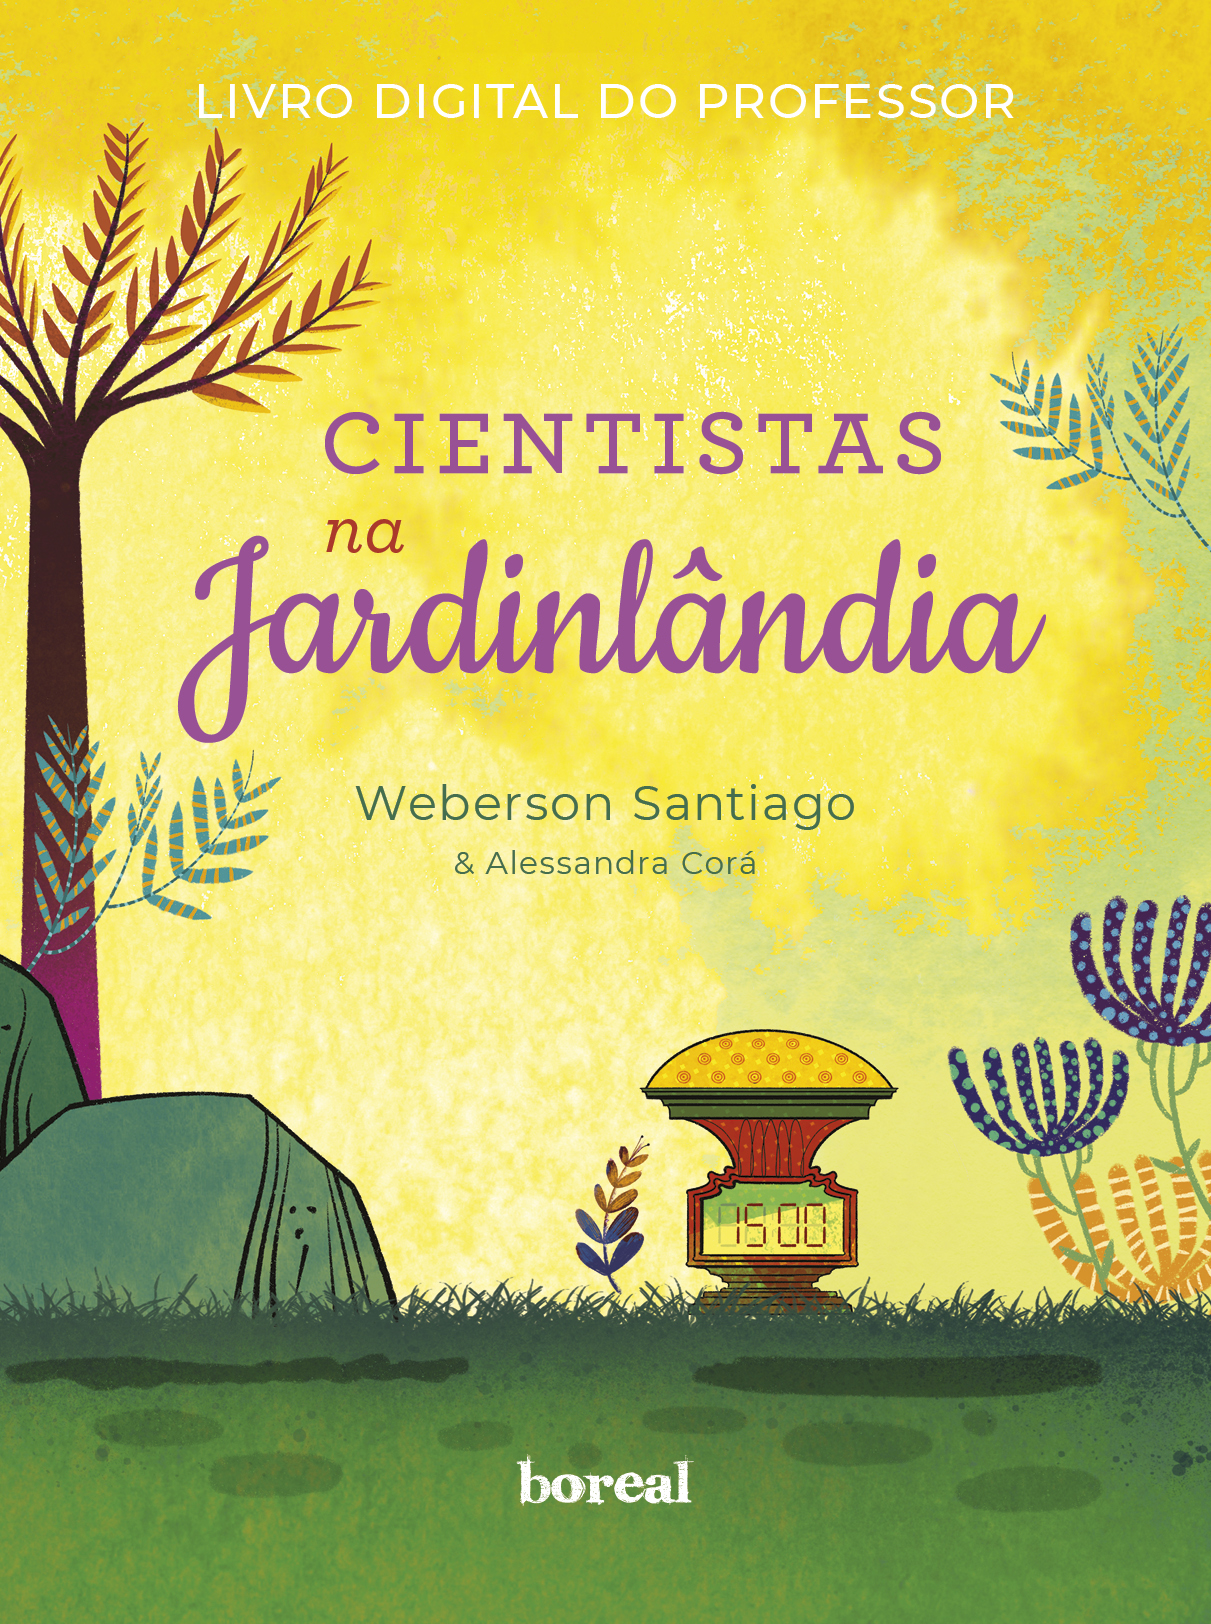 Capa com uma ilustração colorida de um jardim, com gramado, plantas médias e uma árvores; no centro, estão as informações de título e autoria, a seguir descritas